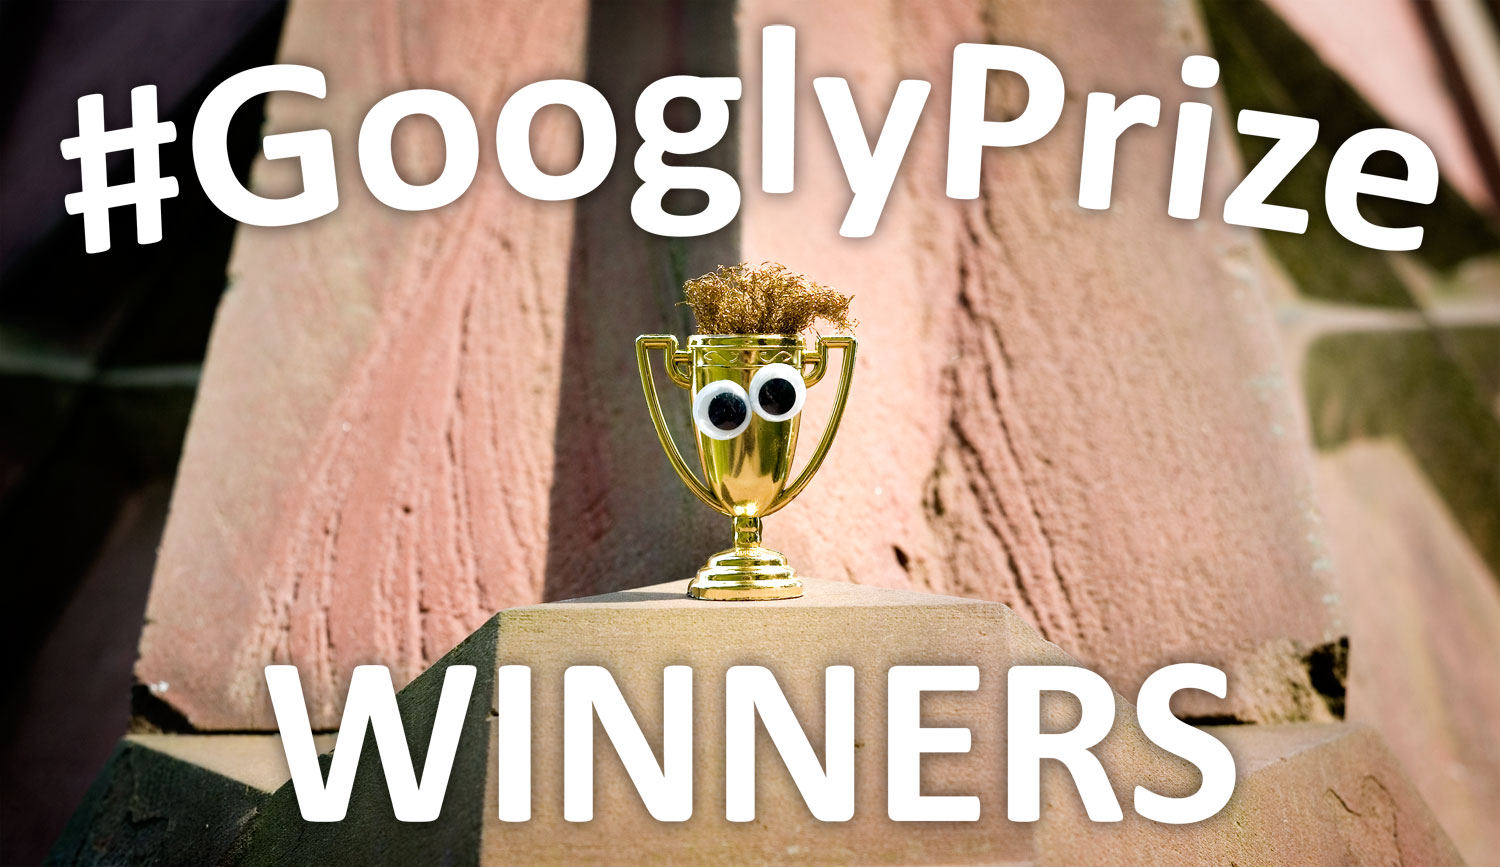 geyes__gprize_44_winners.jpg